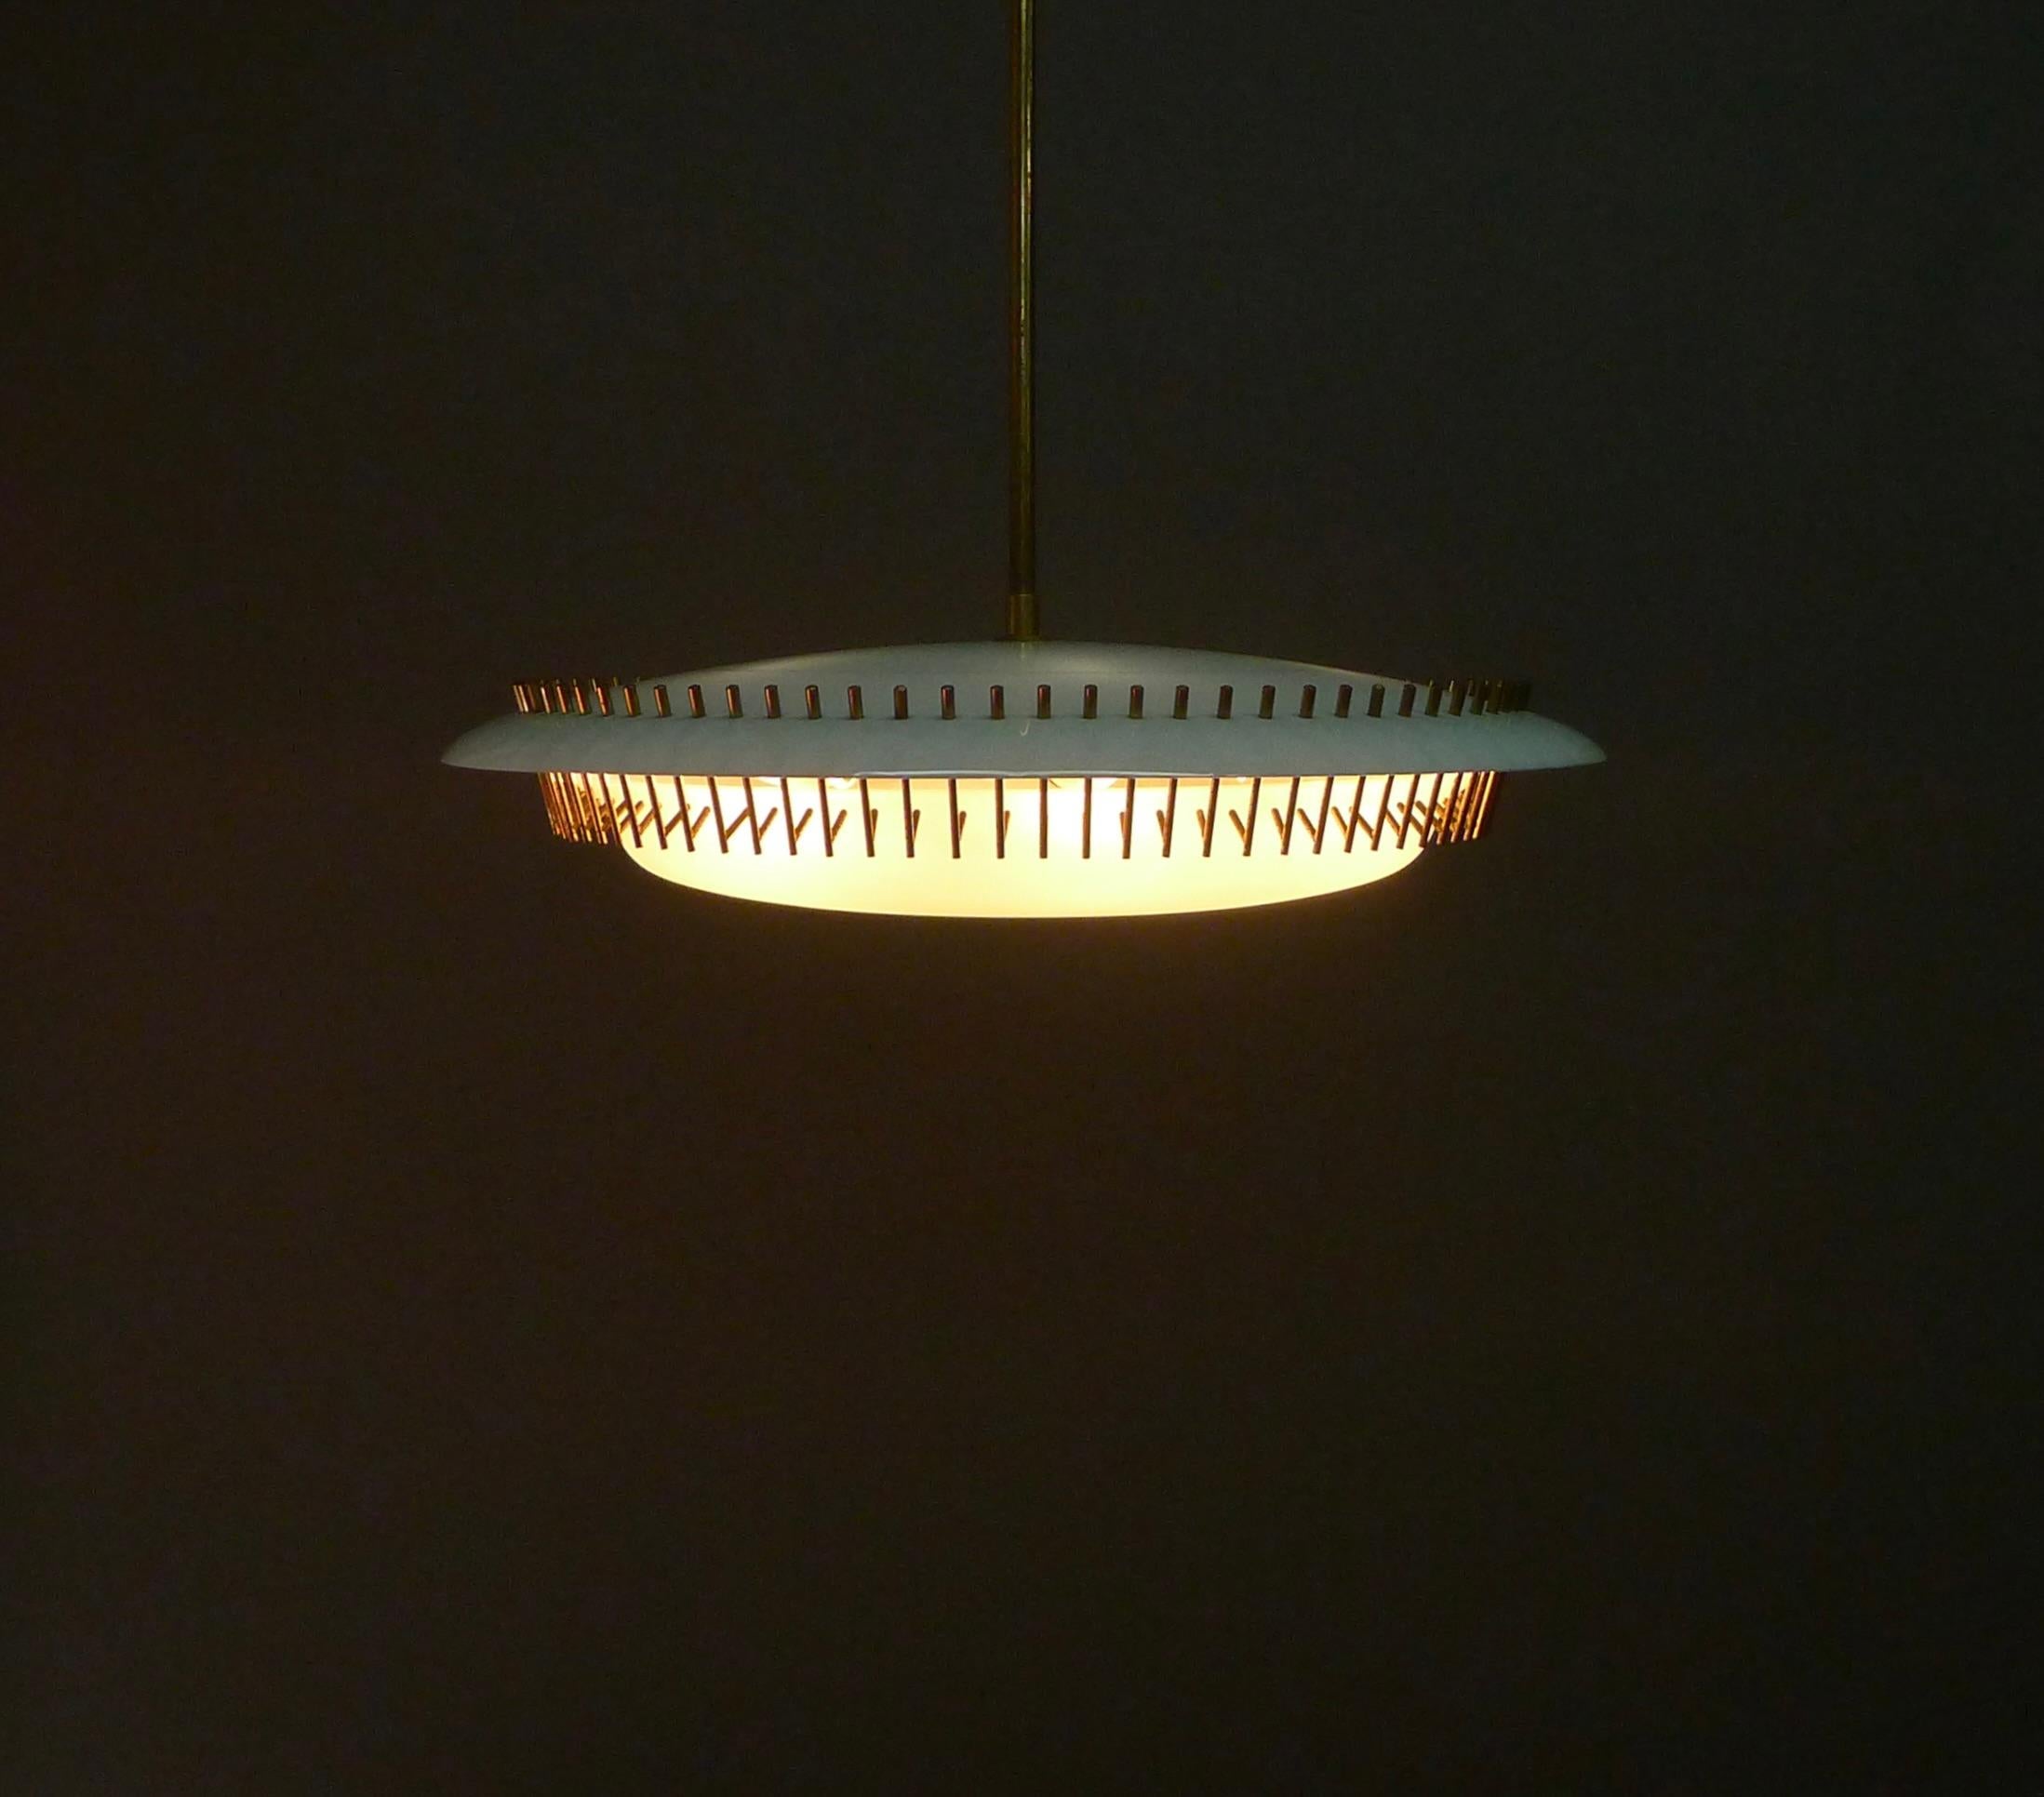 Angelo Lelii für Arredoluce, eine seltene Pendelleuchte Modell 12697, helltürkis  runder Kunststoffschirm über der Fassung für sechs Glühbirnen mit unterem Opalglasschirm, befestigt mit 80 Messingklammern

80cm hoch von der Deckenhalterung bis zum